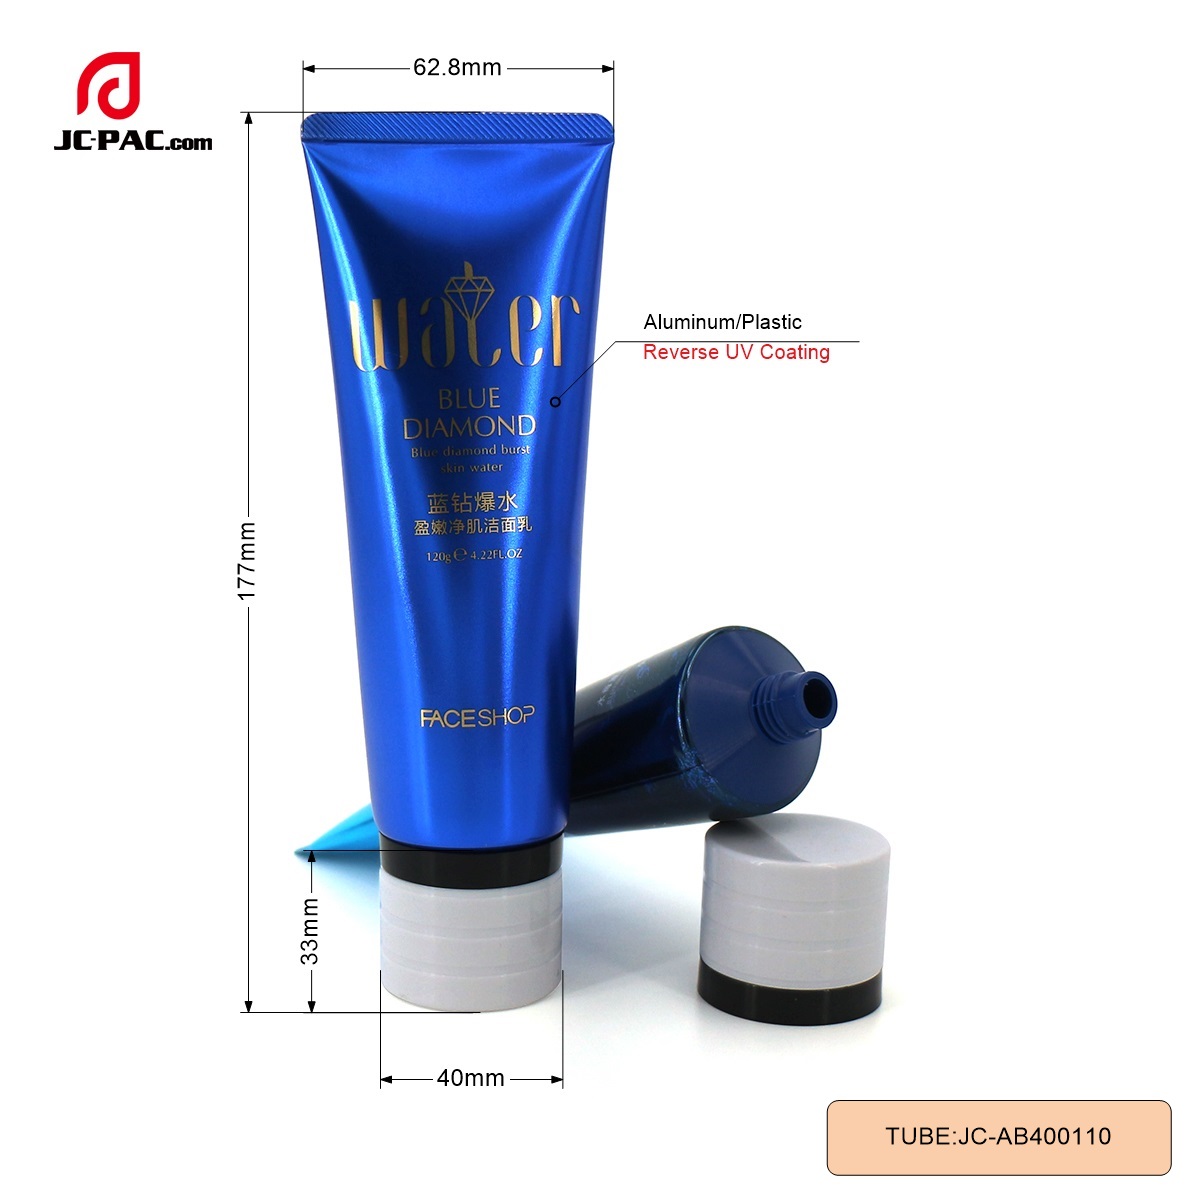 AB400110 120ml Facial Cleanser Cream Aluminum Plastic Tube Cosmetics Tube Packaging Laminated BlueTube